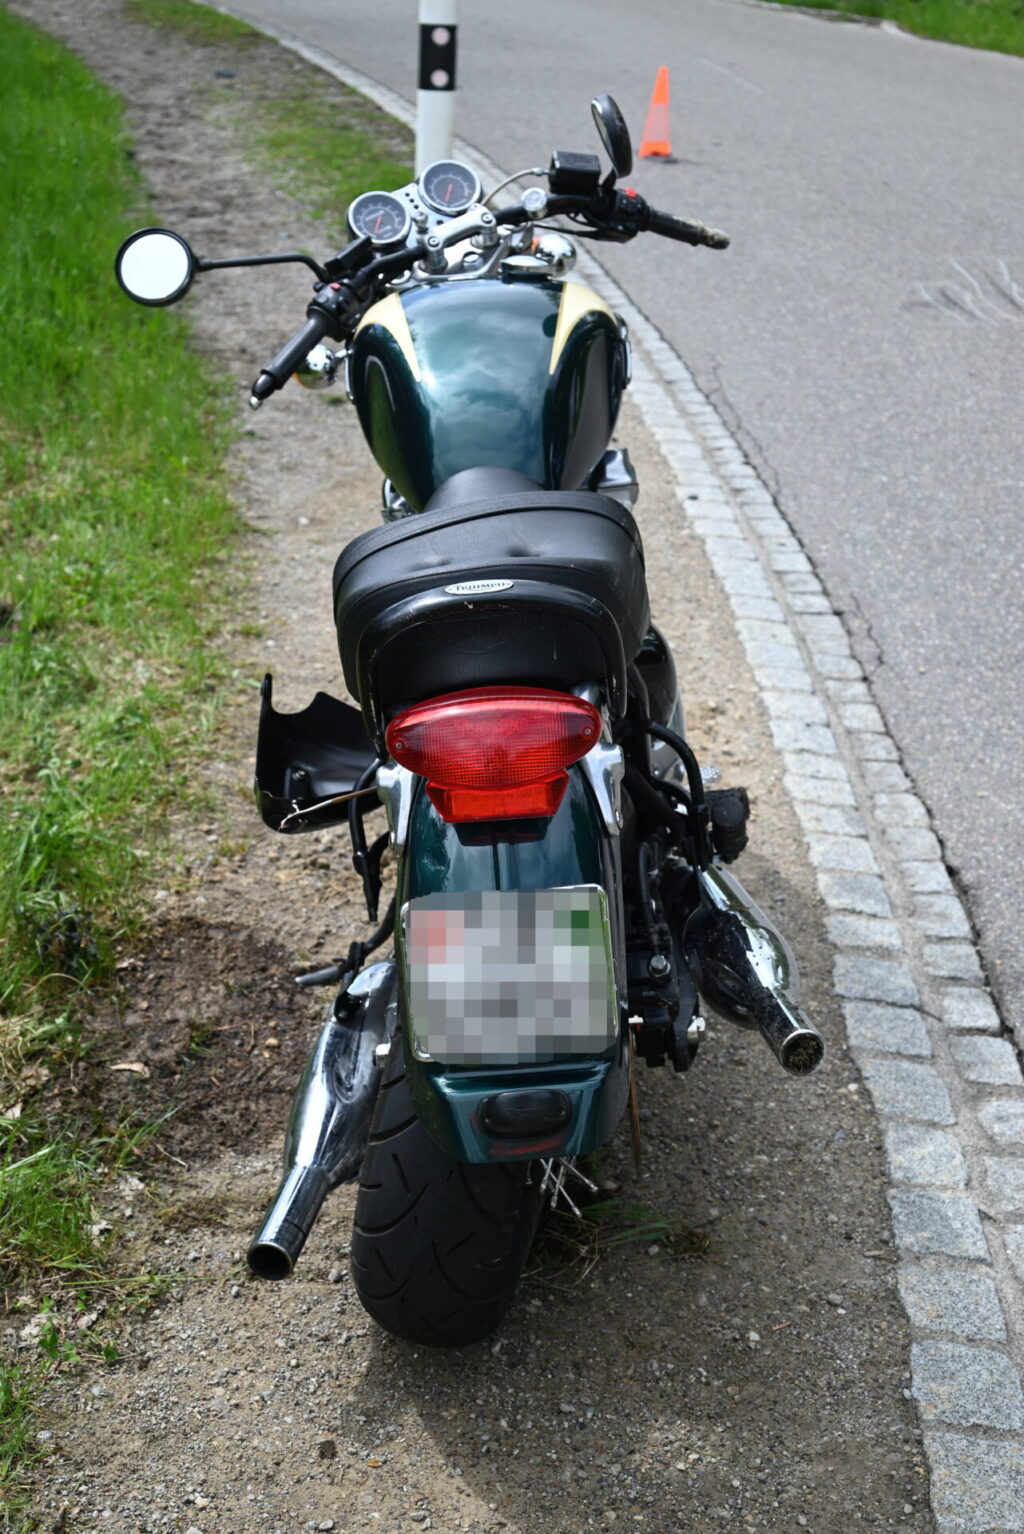 Bütschwil (SG): Zusammenprall zwischen Auto und Motorrad, zwei Verletzte